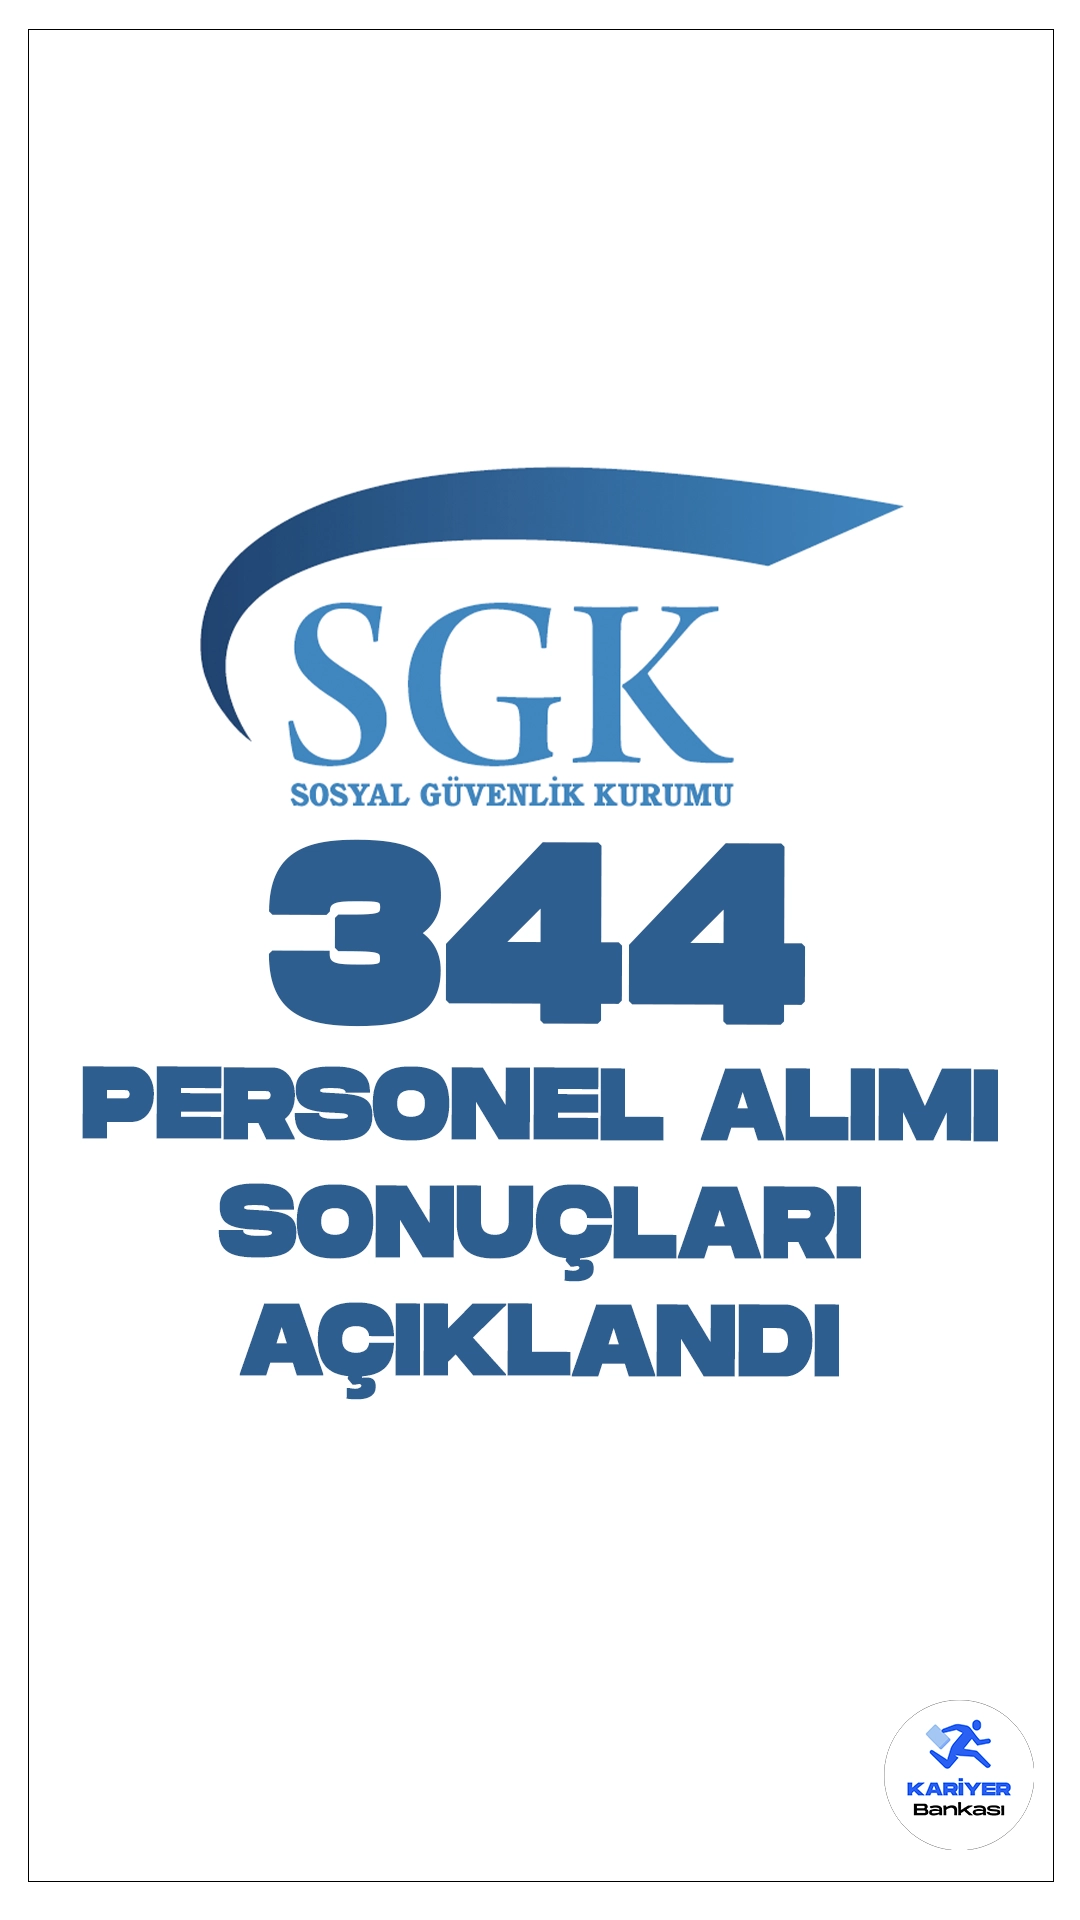 SGK 344 Personel Alımı Sonuçları Açıklandı. Sosyal Güvenlik Kurumu sayfasından yayımlanan duyuruda, büro personeli, koruma ve güvenlik görevlisi, teknisyen, destek personeli(temizlik, aşçı, bulaşıkçı) ünvanlarında olmak üzere toplamda 344 personel alımı sonuçları açıklandı.